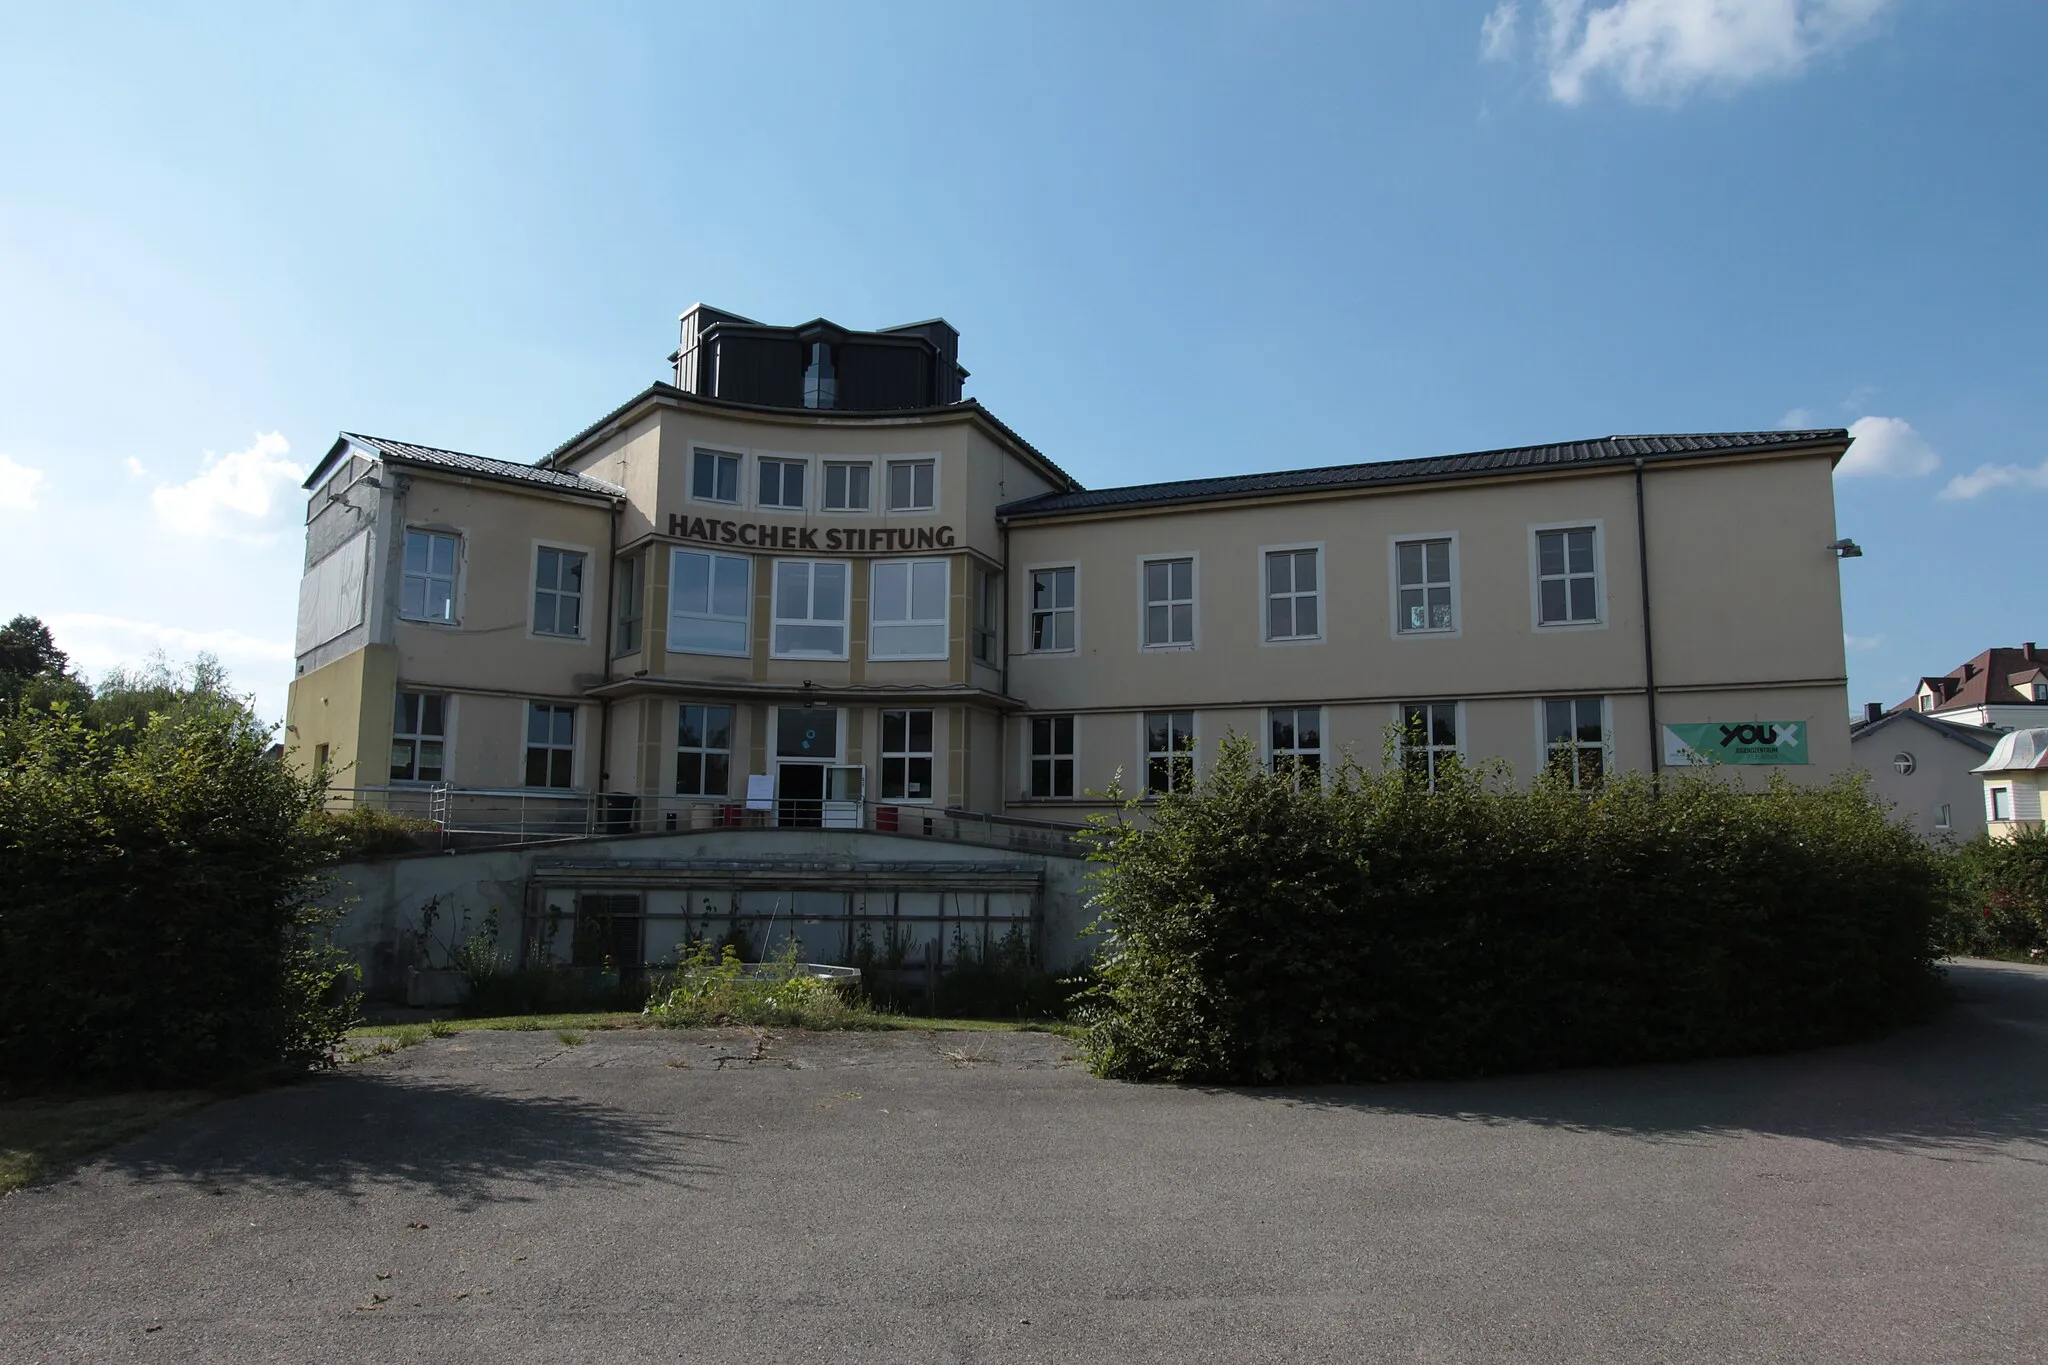 Photo showing: Hatschek-Stiftung, cultural center in Vöcklabruck, Austria.